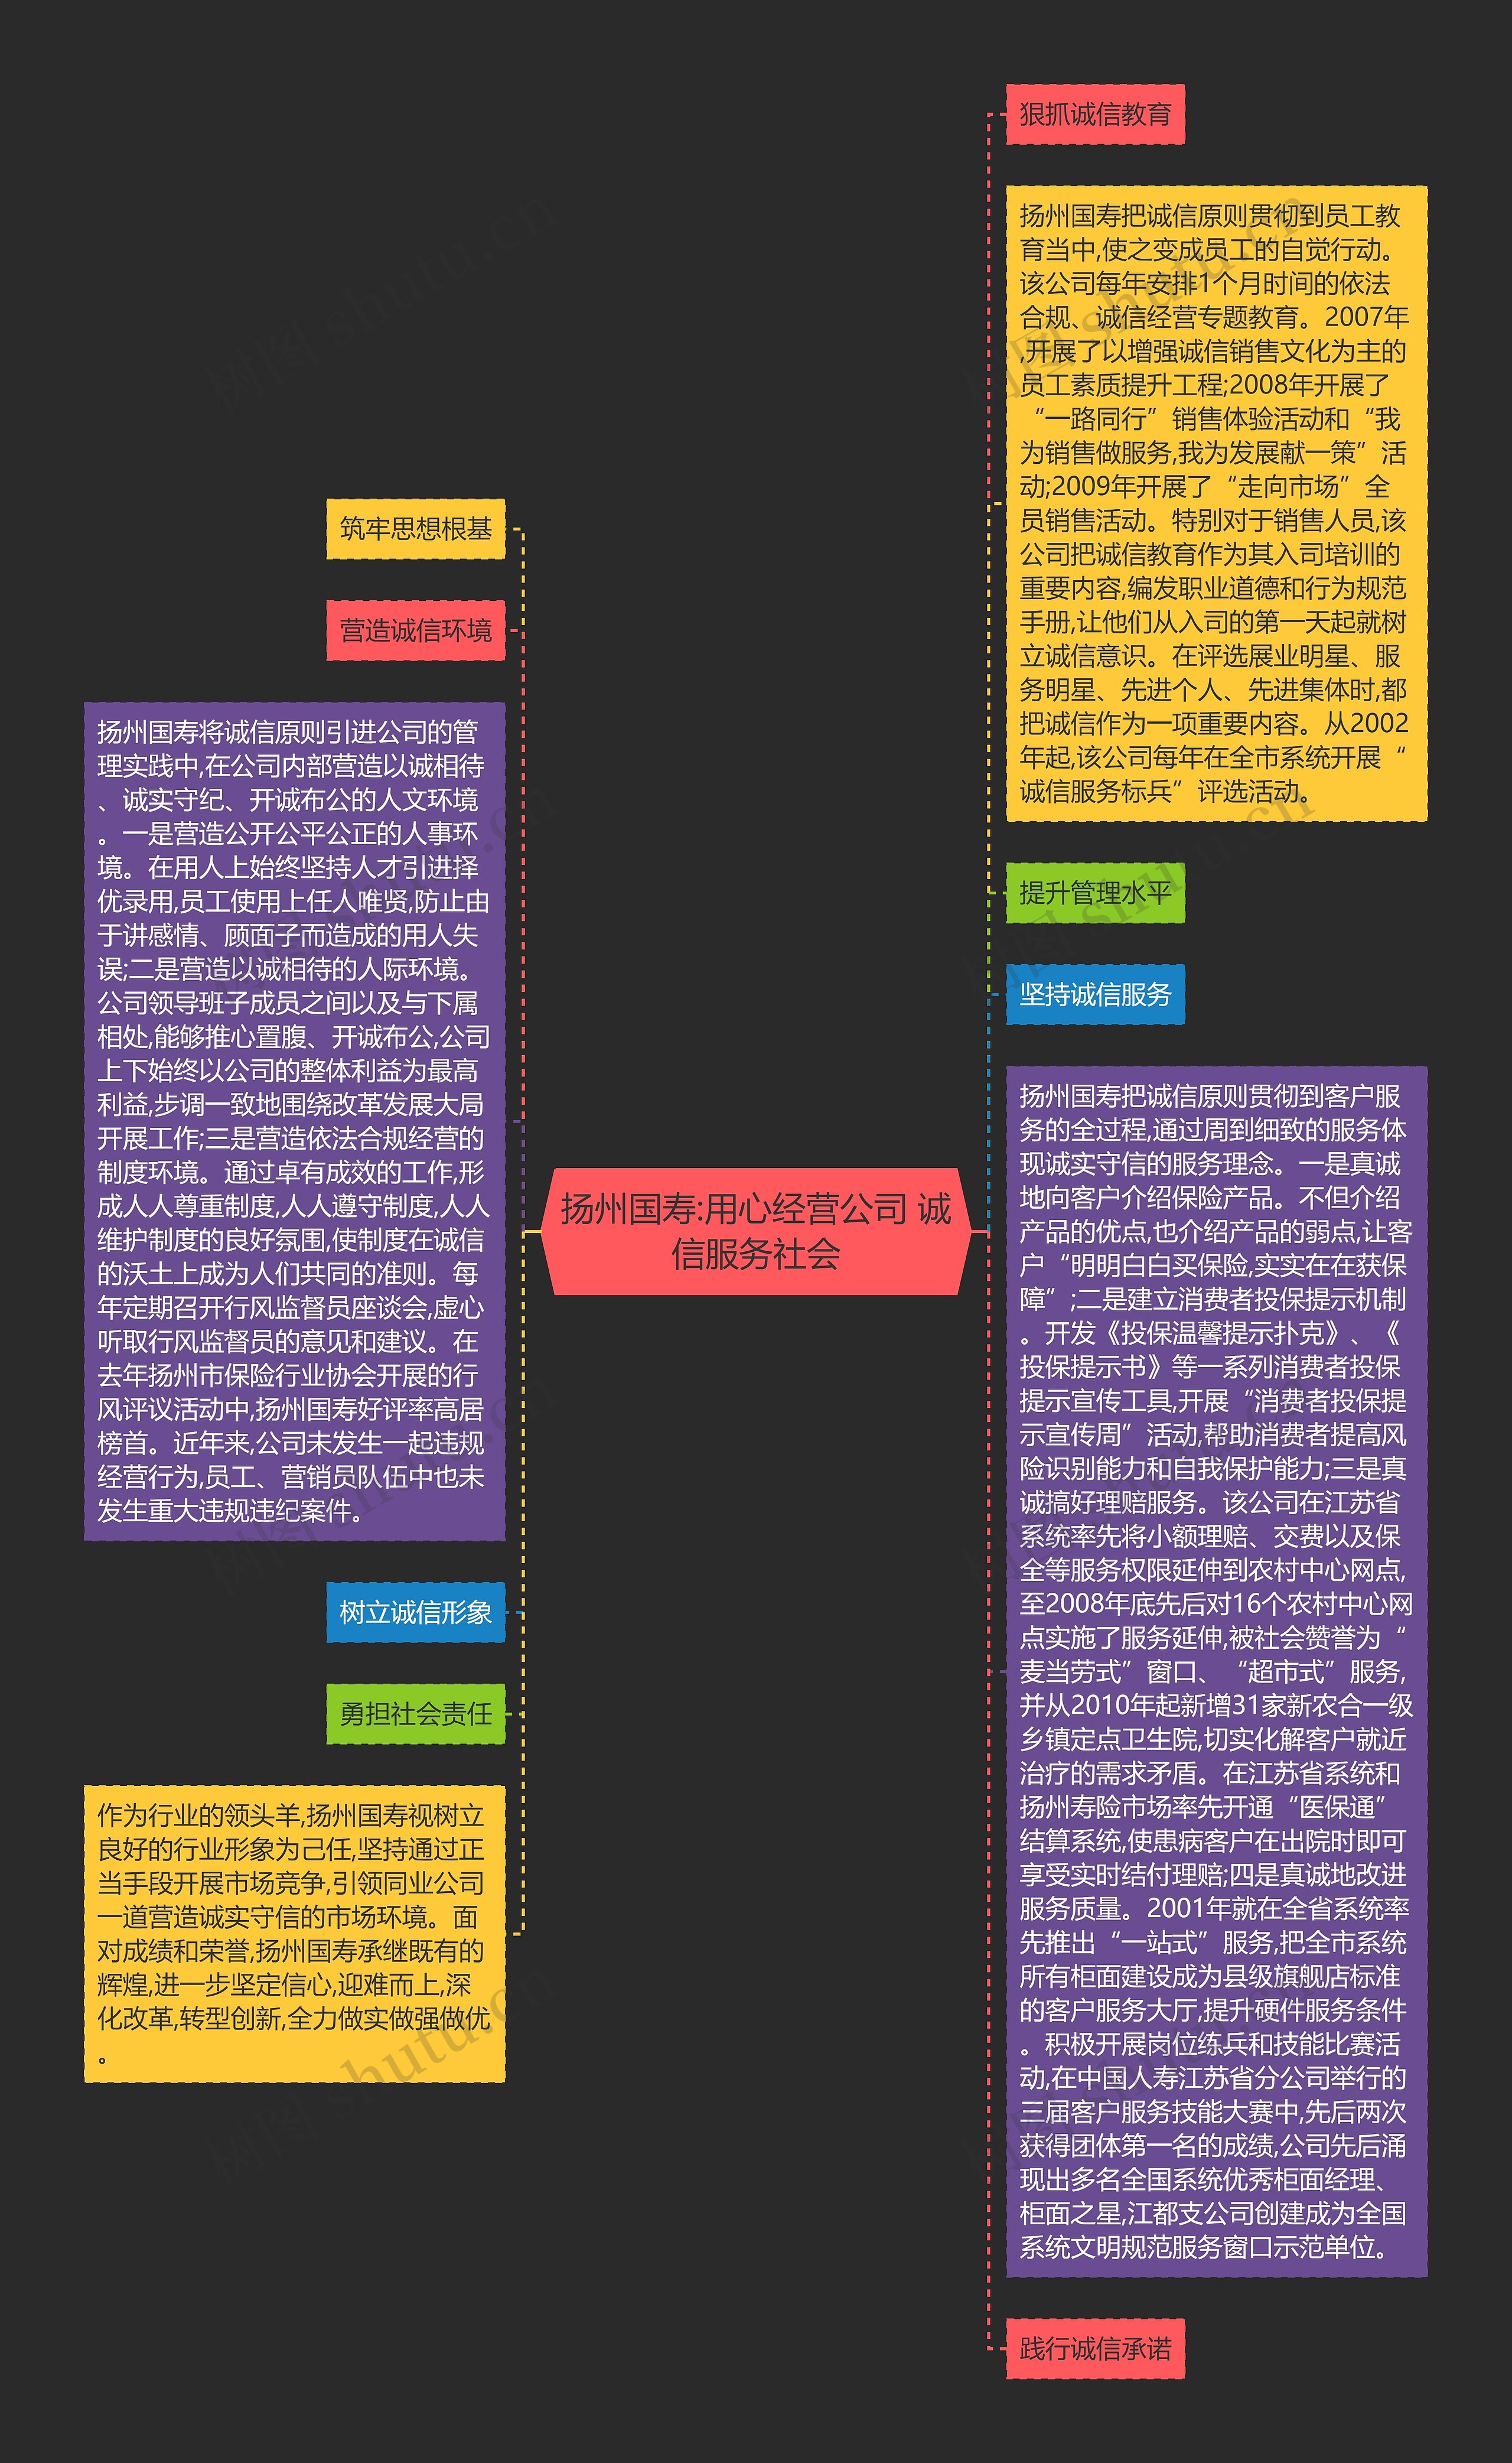 扬州国寿:用心经营公司 诚信服务社会思维导图